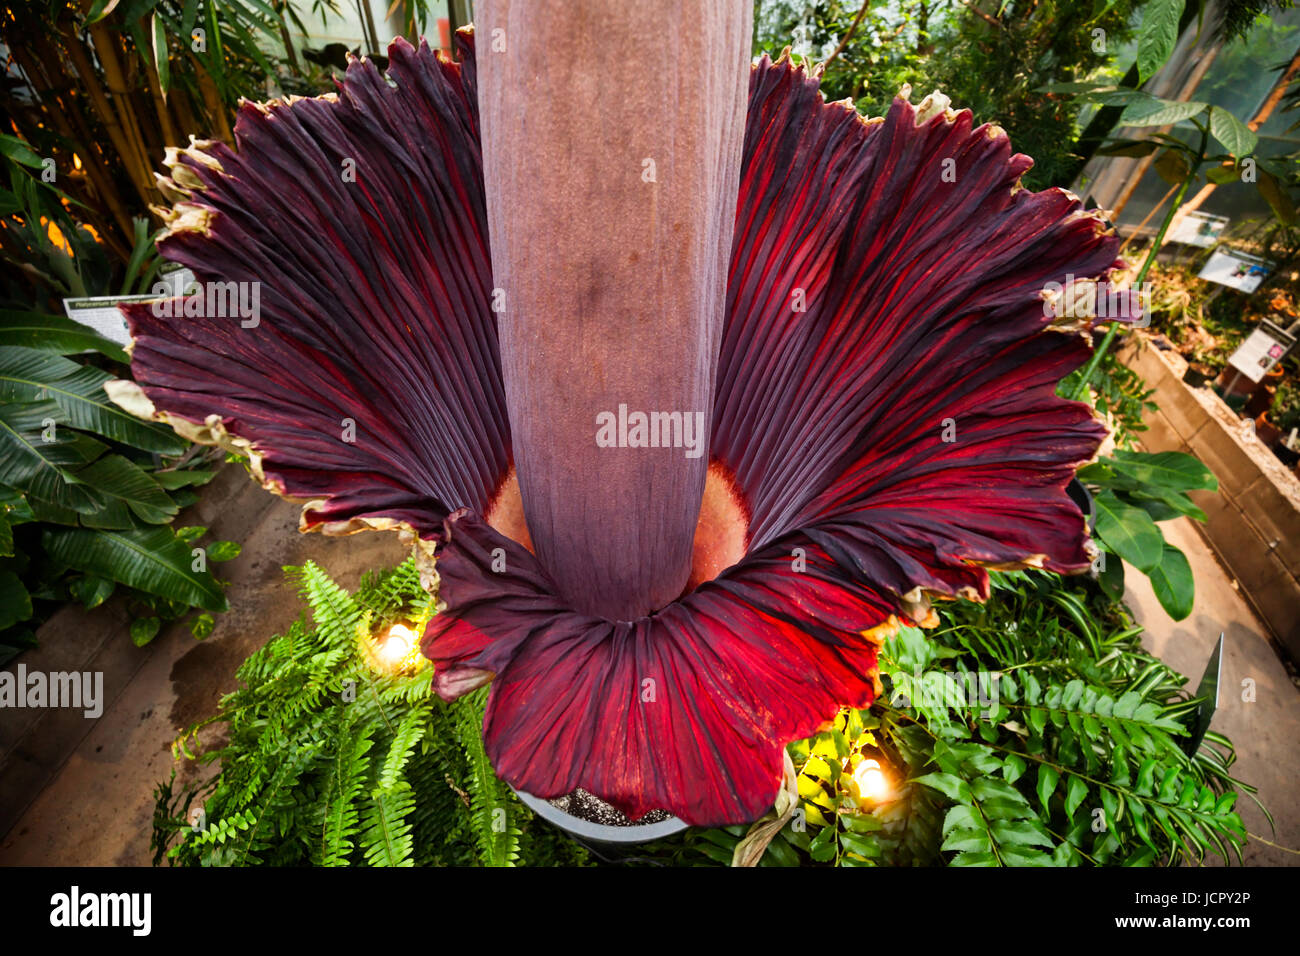 Ein Titan Arum oder Amorphophallus Titanum in voller Blüte, ist es eine blühende Pflanze oder Aas Blume, die in West-Sumatra heimisch ist. Stockfoto